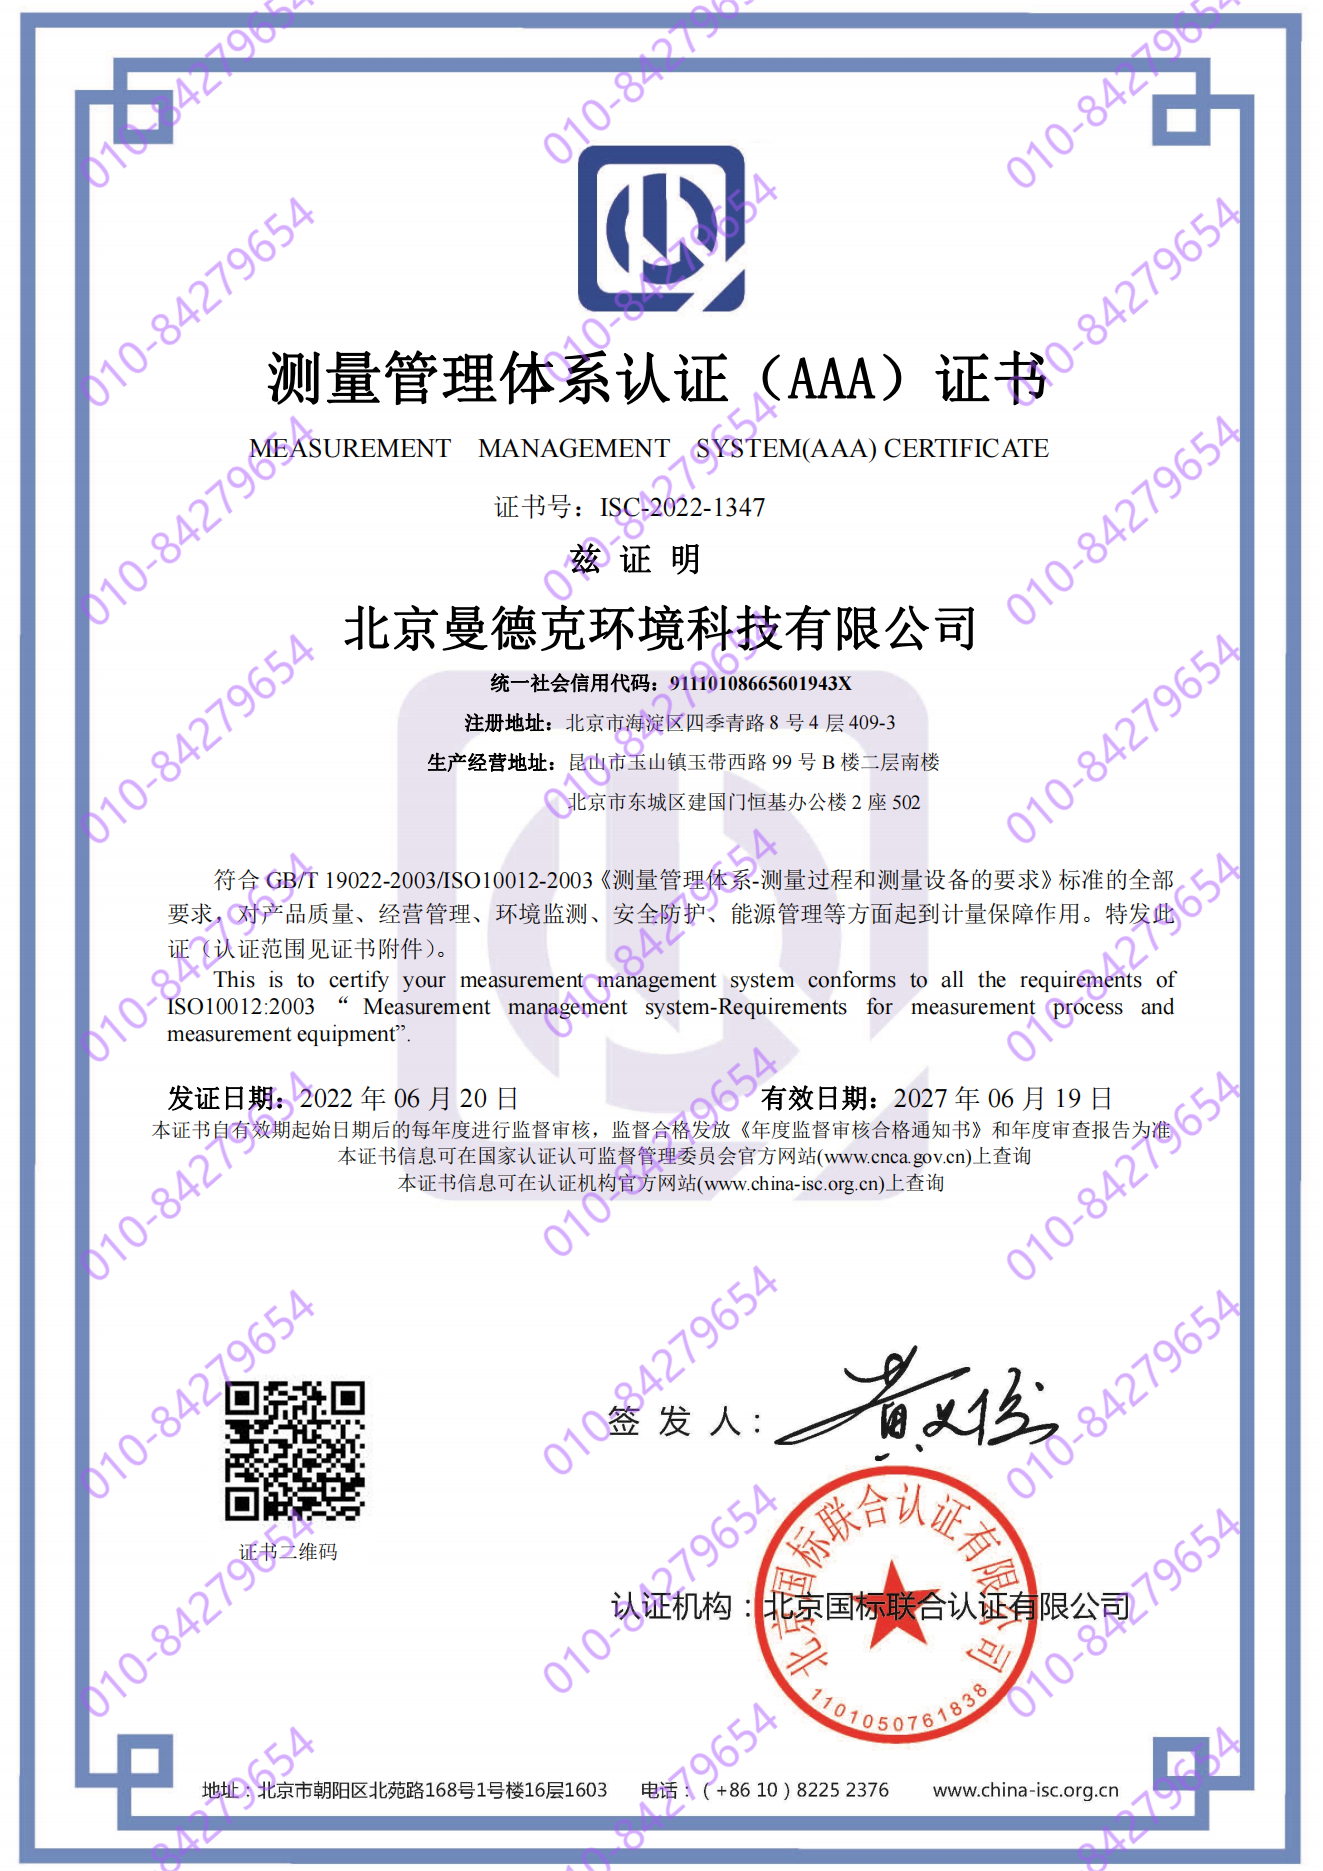 北京曼德克环境科技有限公司  喜获“测量管理体系认证（AAA）证书”